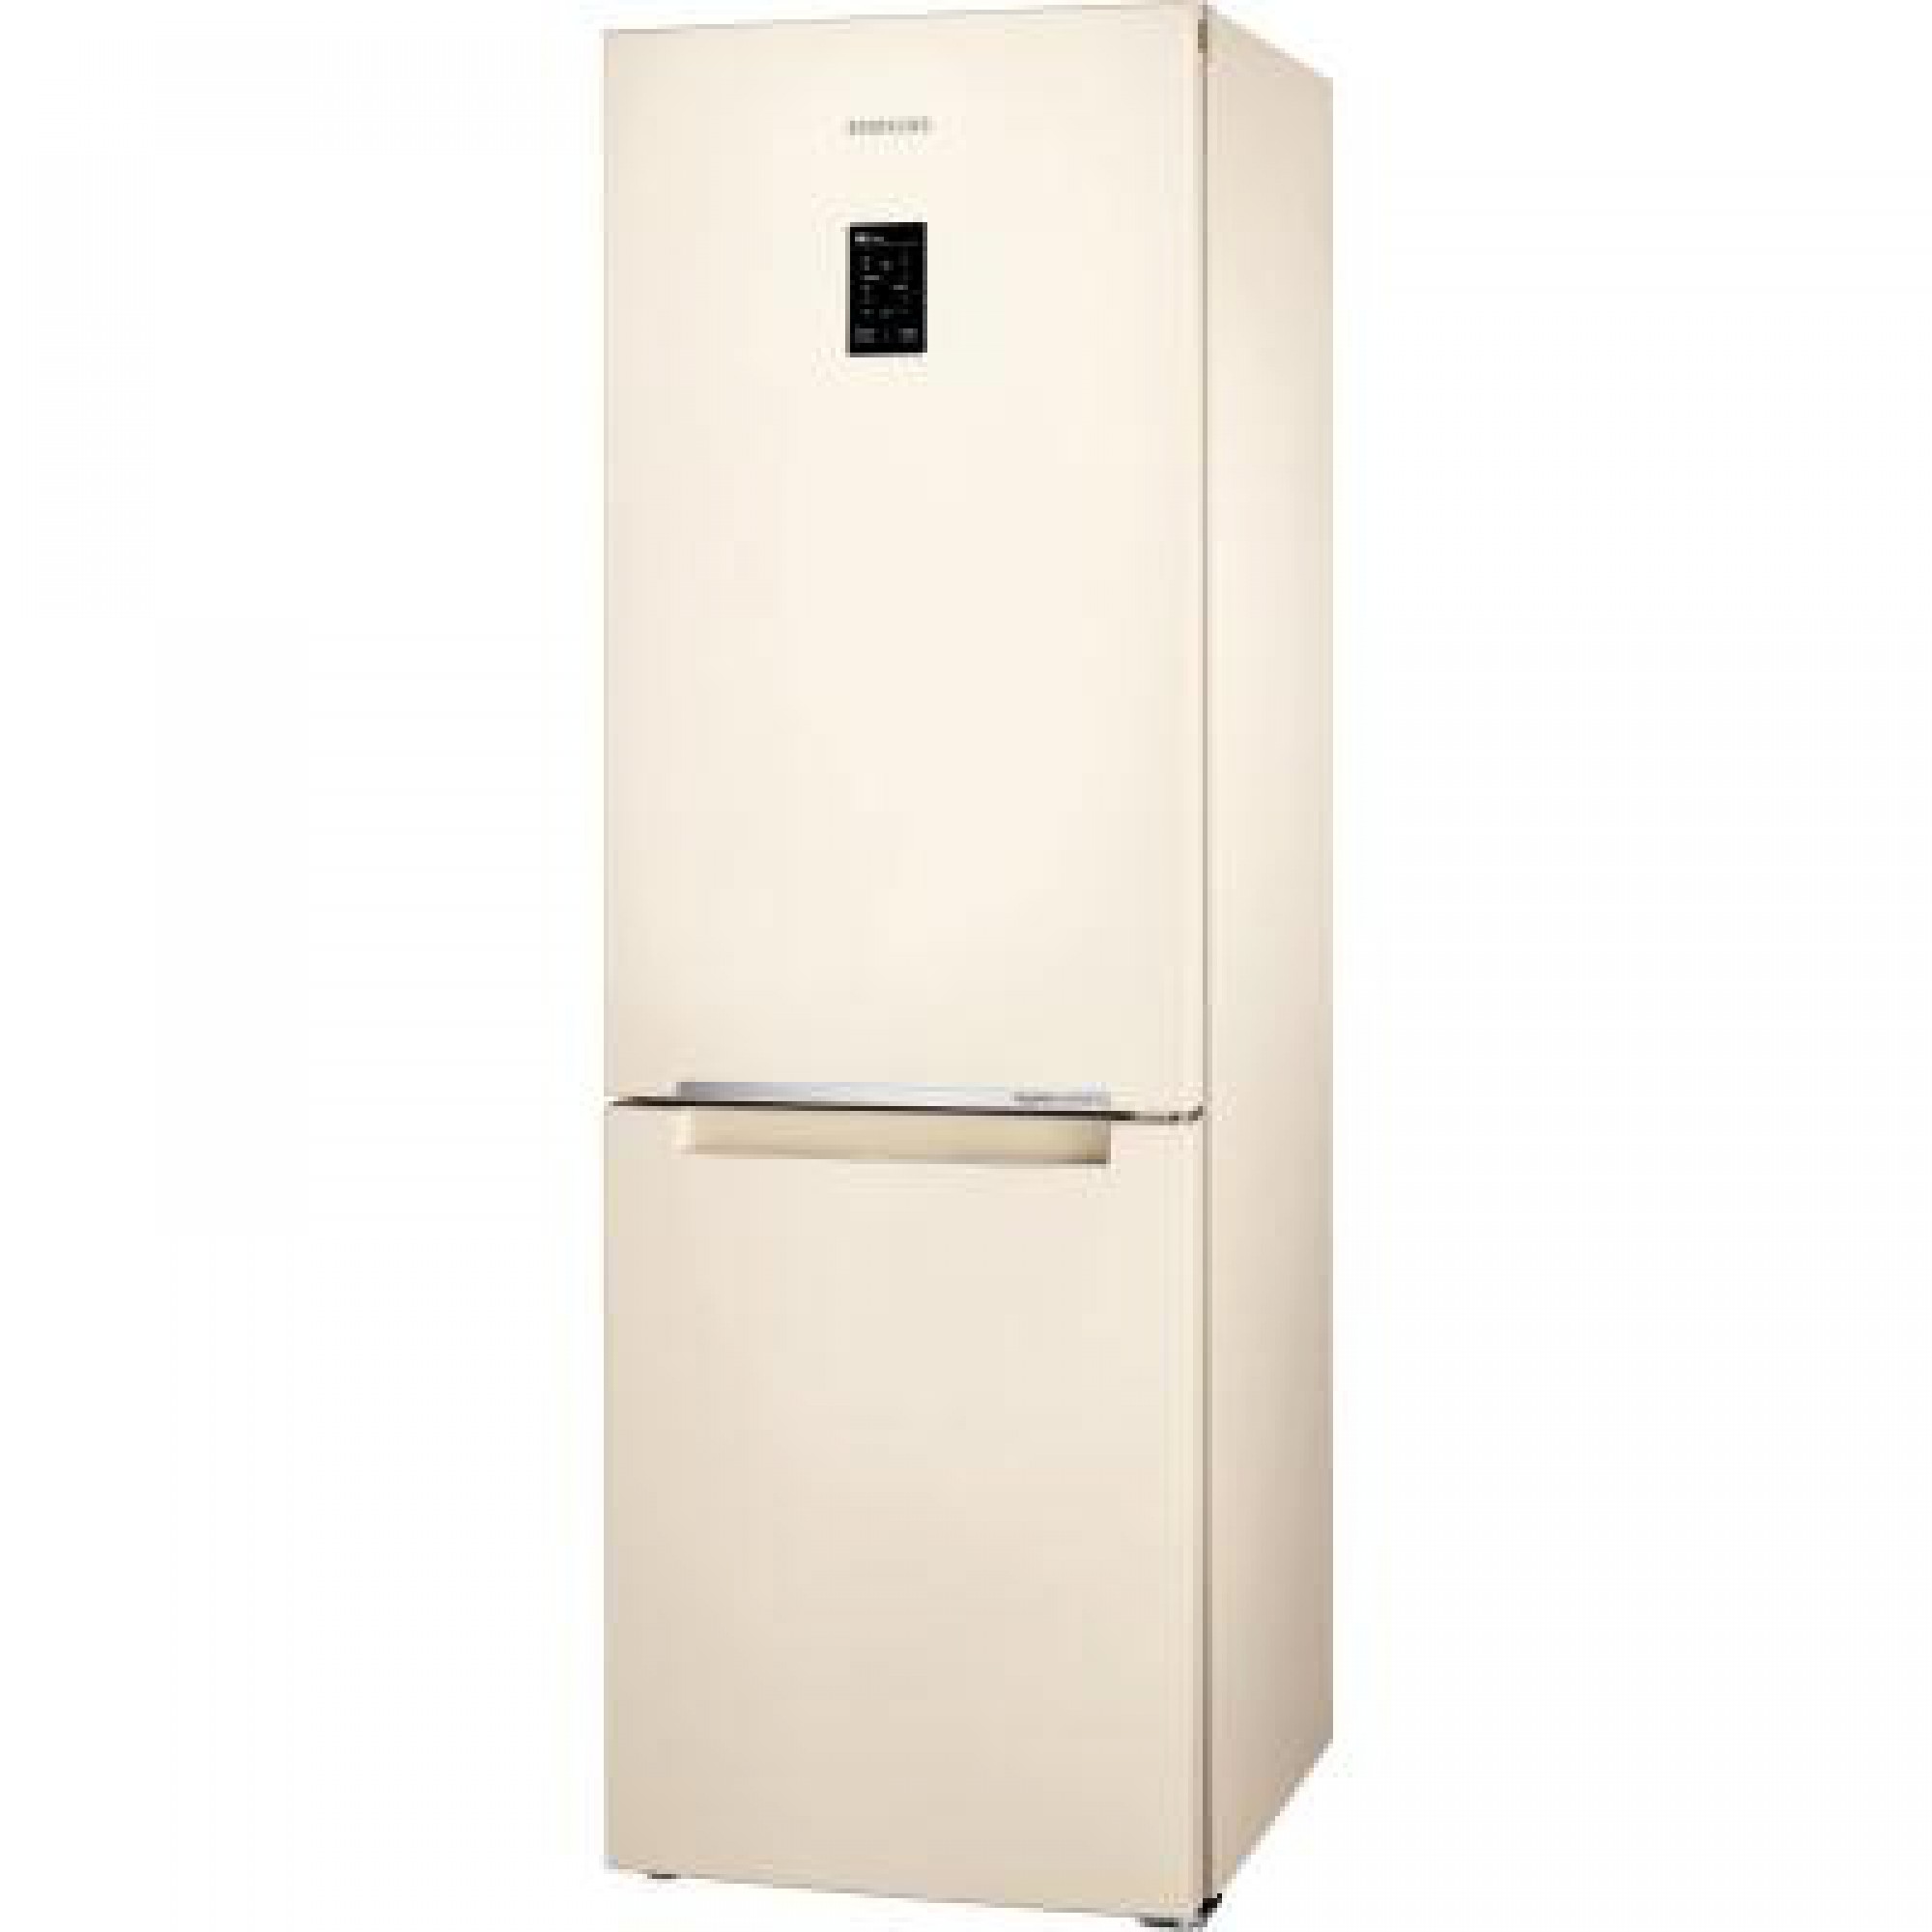 Холодильник Samsung RB33J3200EF/UA